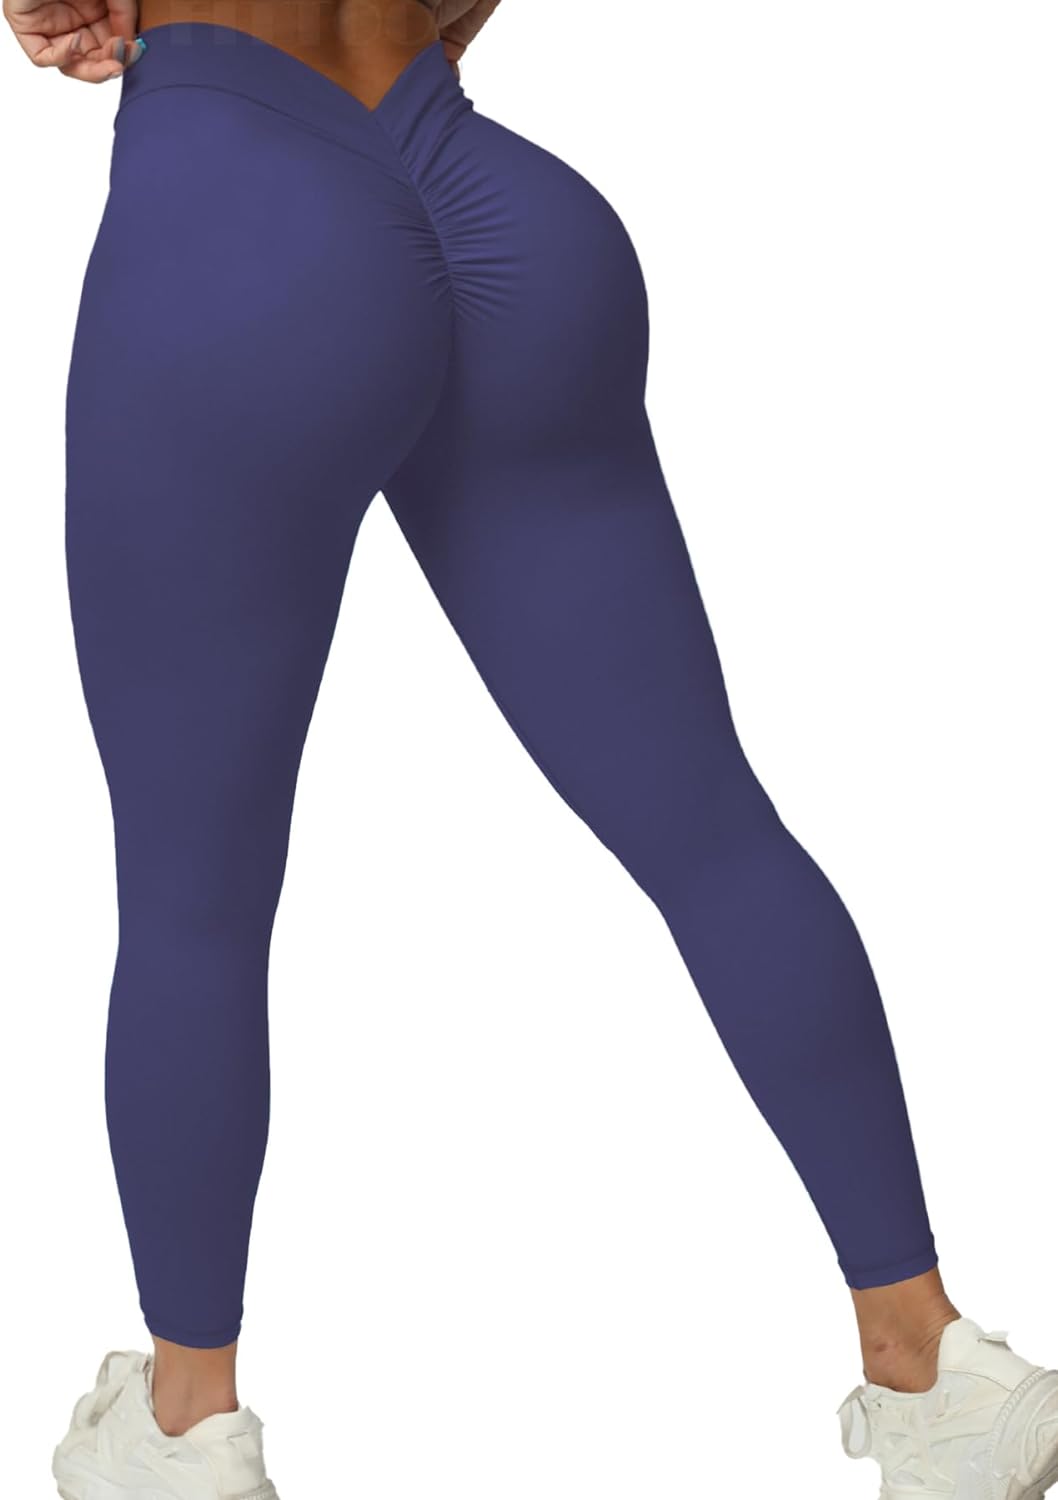 Fittoo Womens Yoga Pants Butt Lift Leggings High Waist Workout